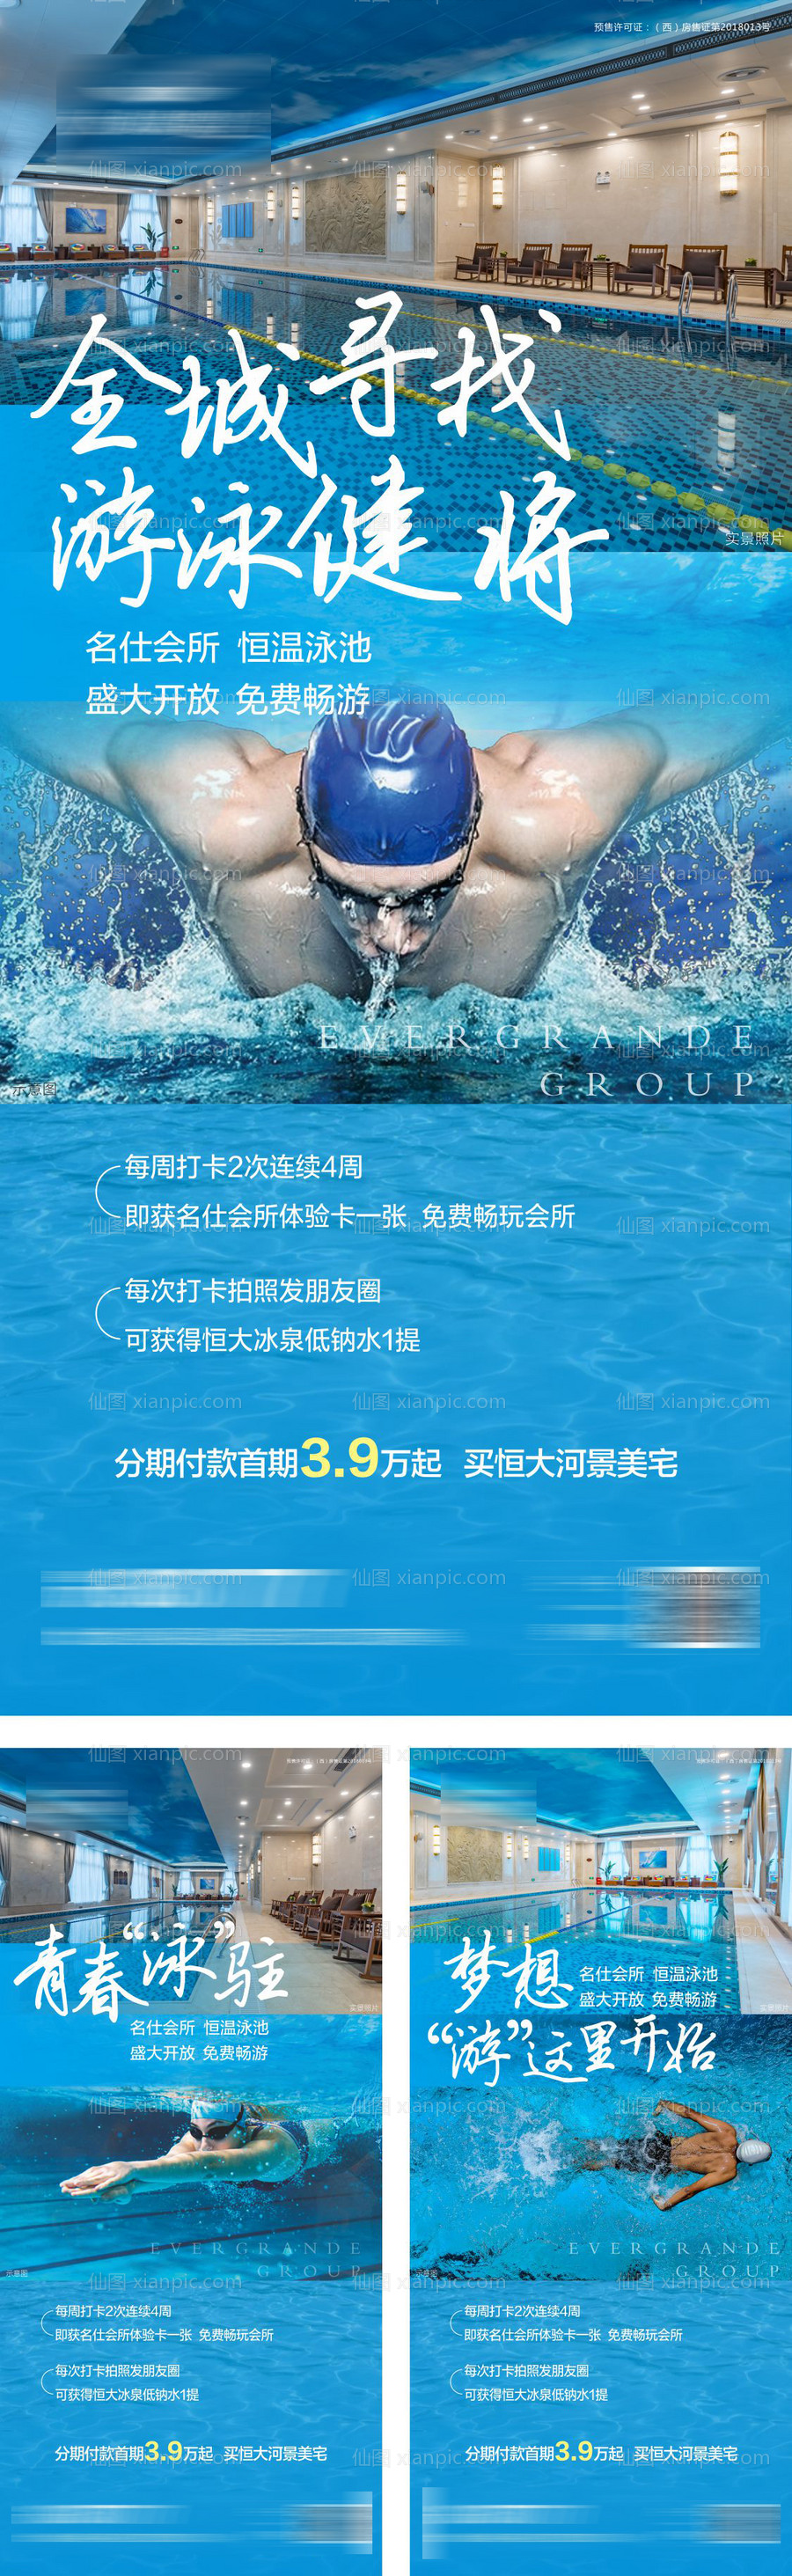 素材乐-地产游泳池开放活动单图海报